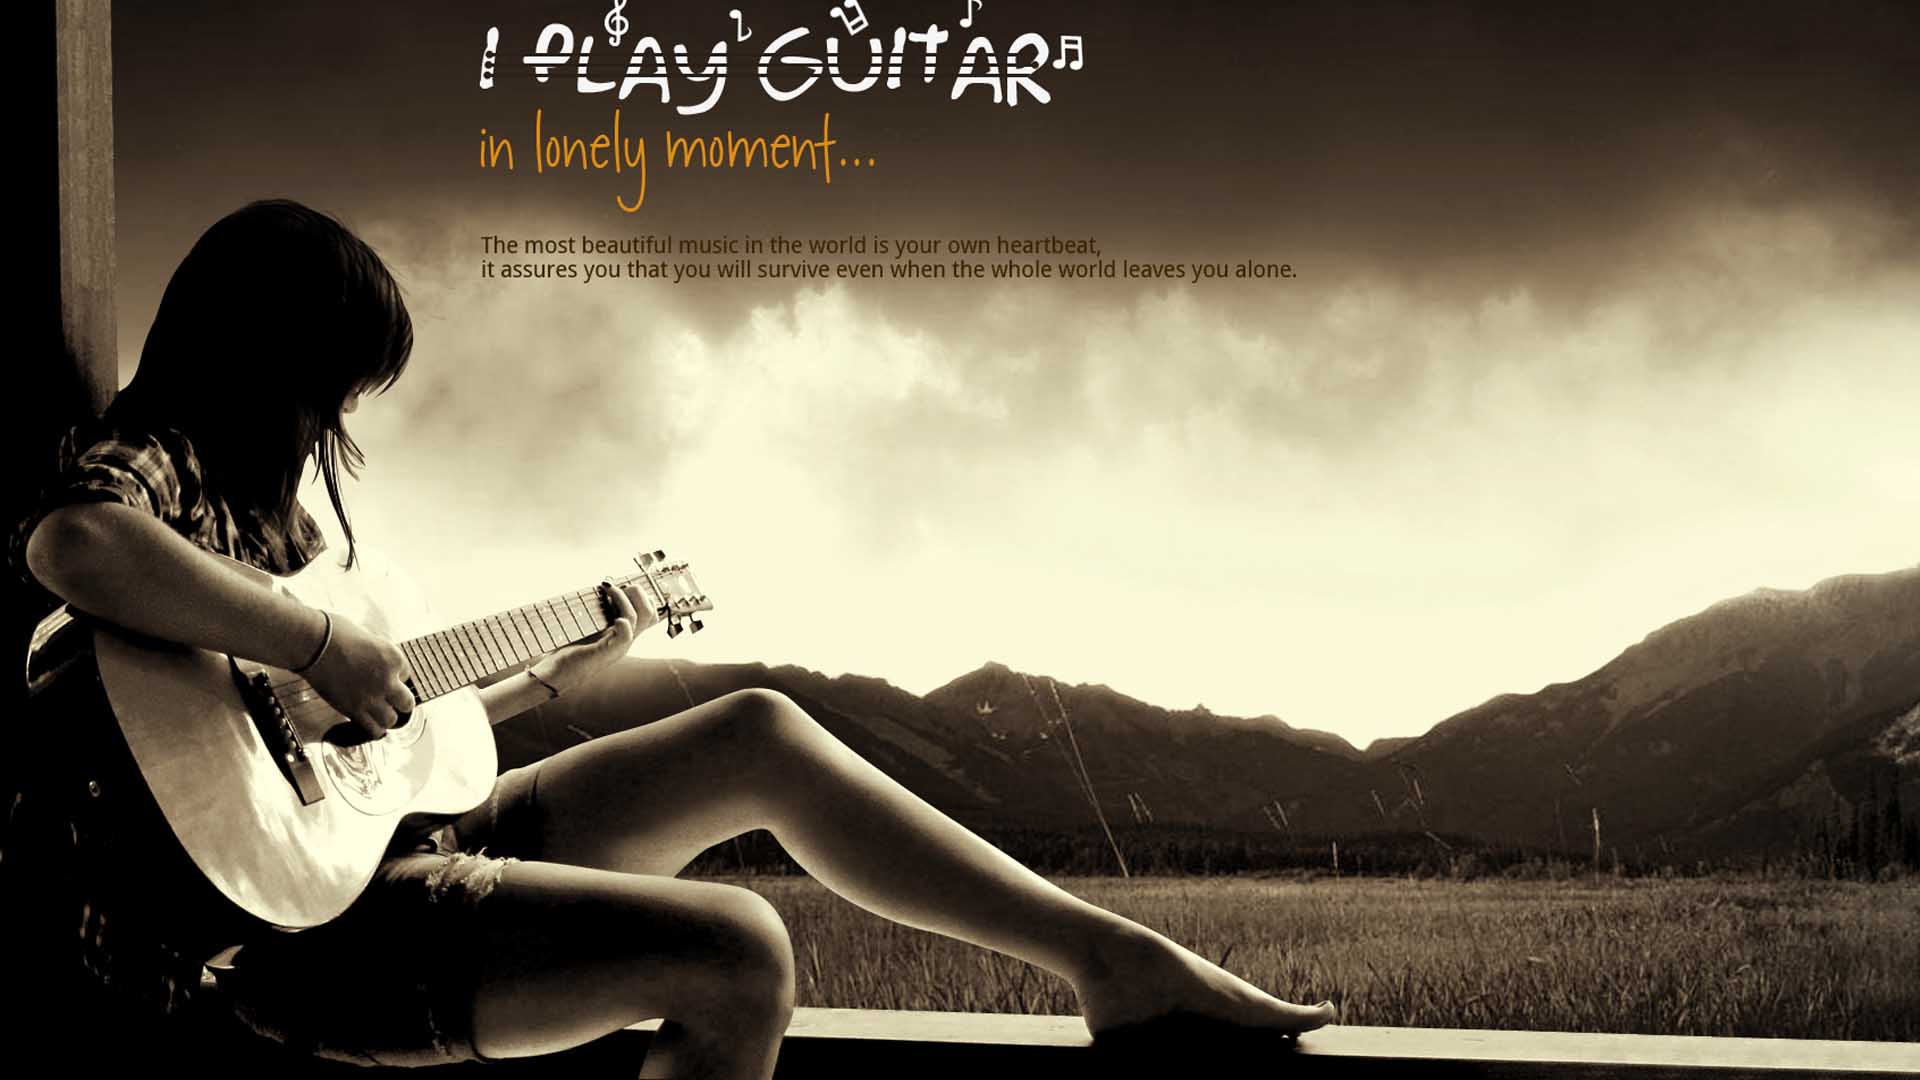 fond d'écran de fille avec guitare,guitare,la musique,guitariste,instruments à cordes pincées,guitare acoustique